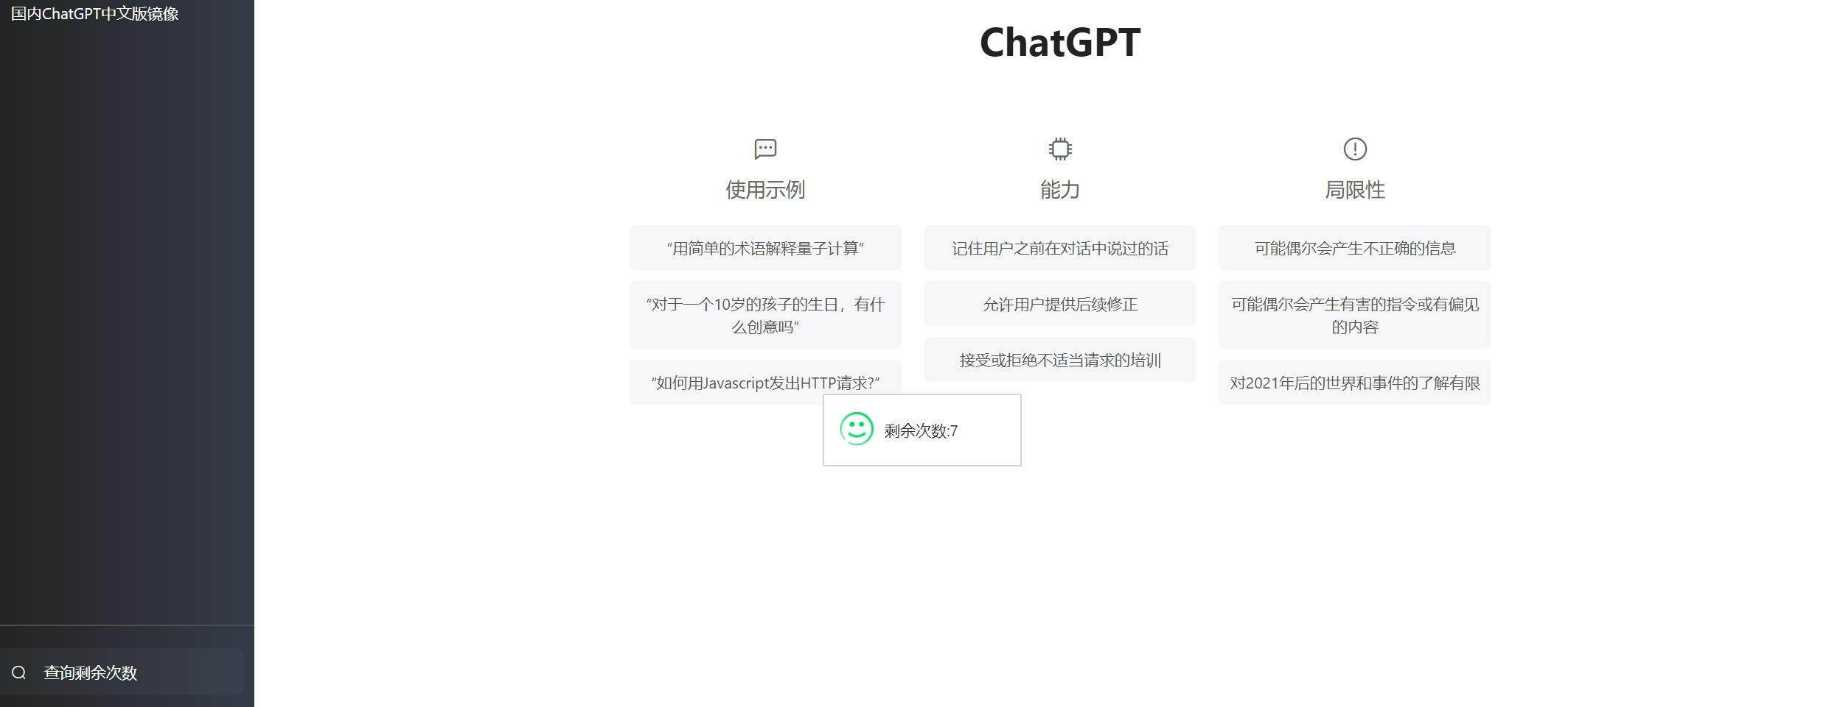 [超值]支持用户付费ChatGpt网页源码+搭建赚取收益